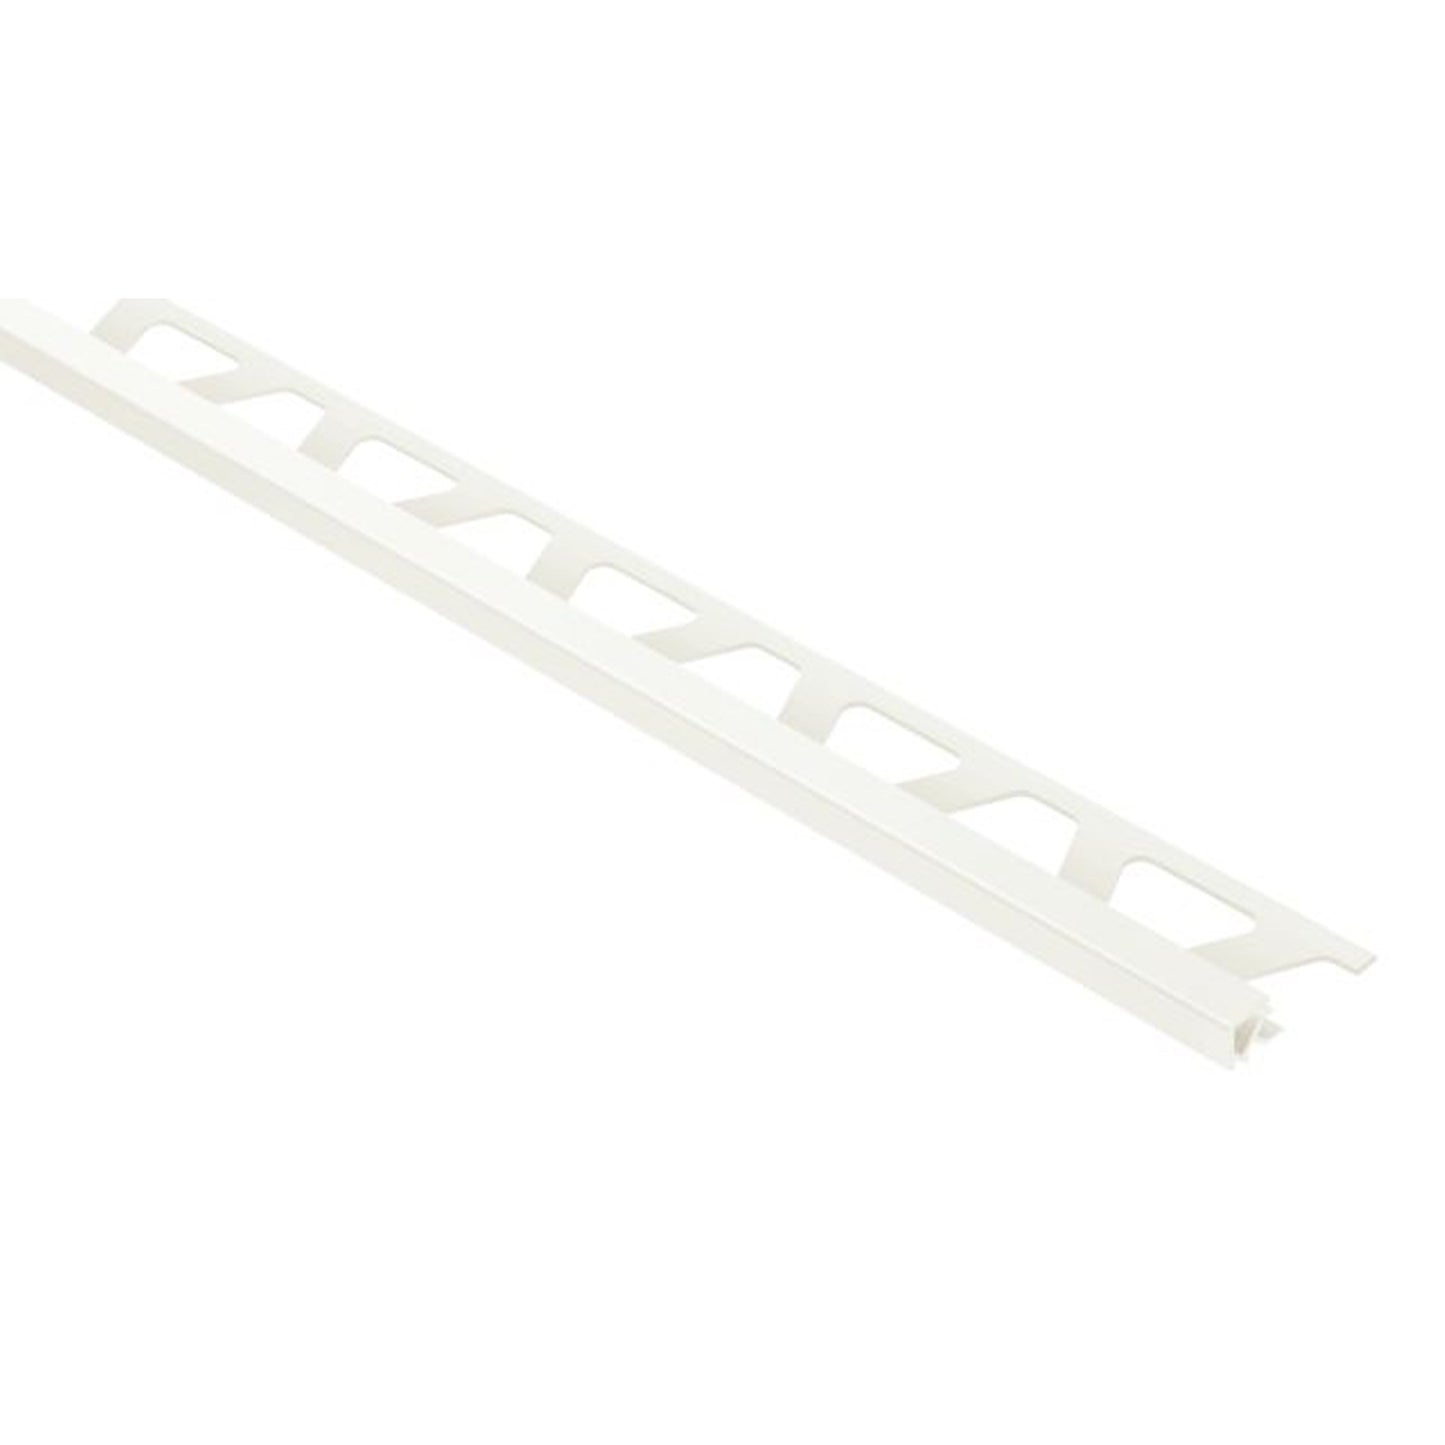 SCHLUTER PQ100W PVC QUADEC 3/8" WHITE PROFILE